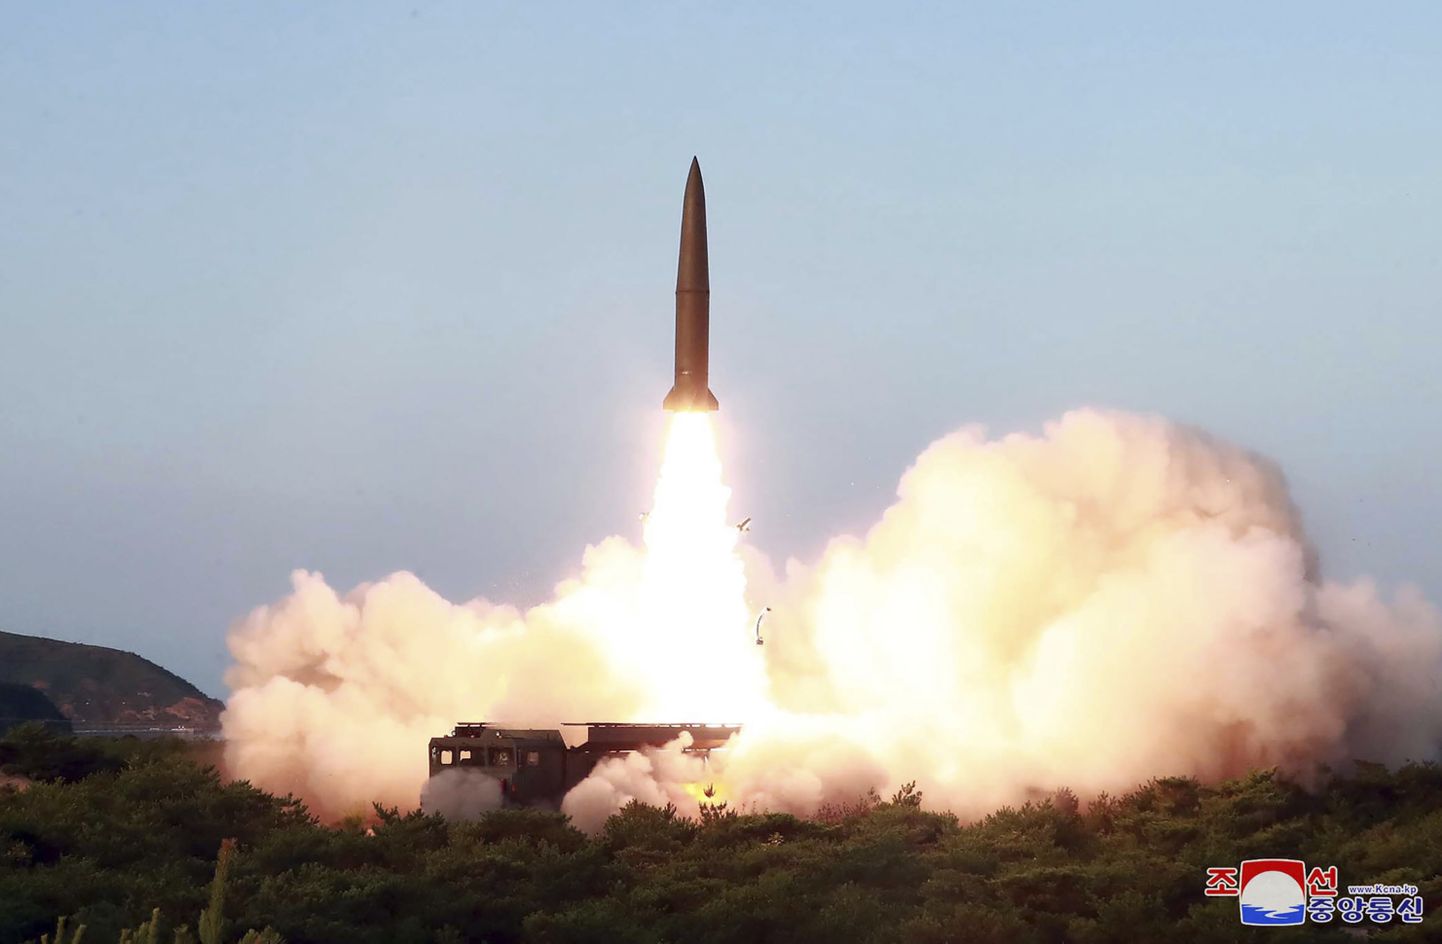 Põhja-Korea raketikatsetus 9. augustil 2019.